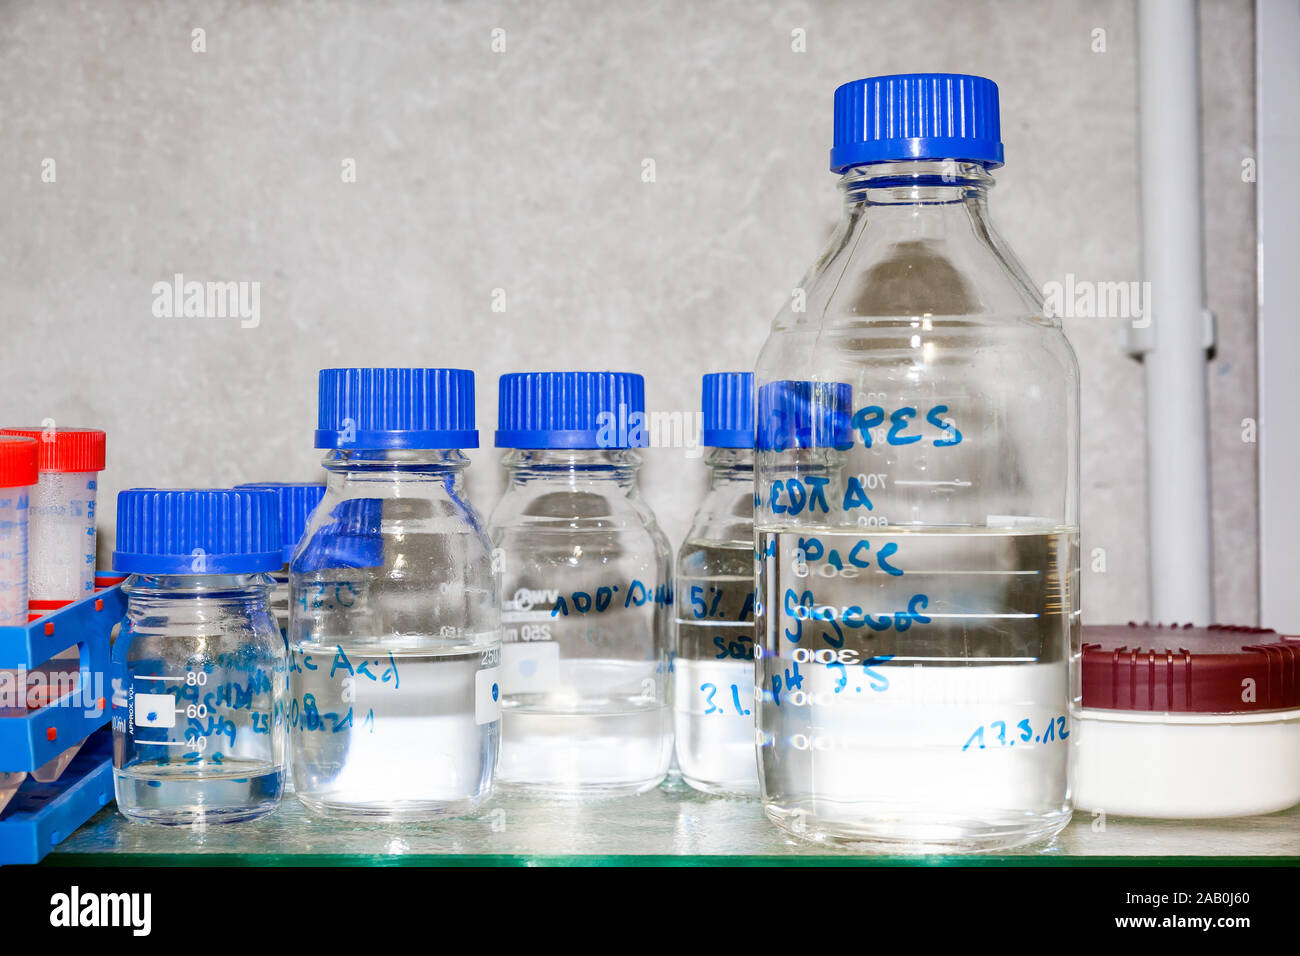 Utensilien aus einem Chemielabor Stock Photo